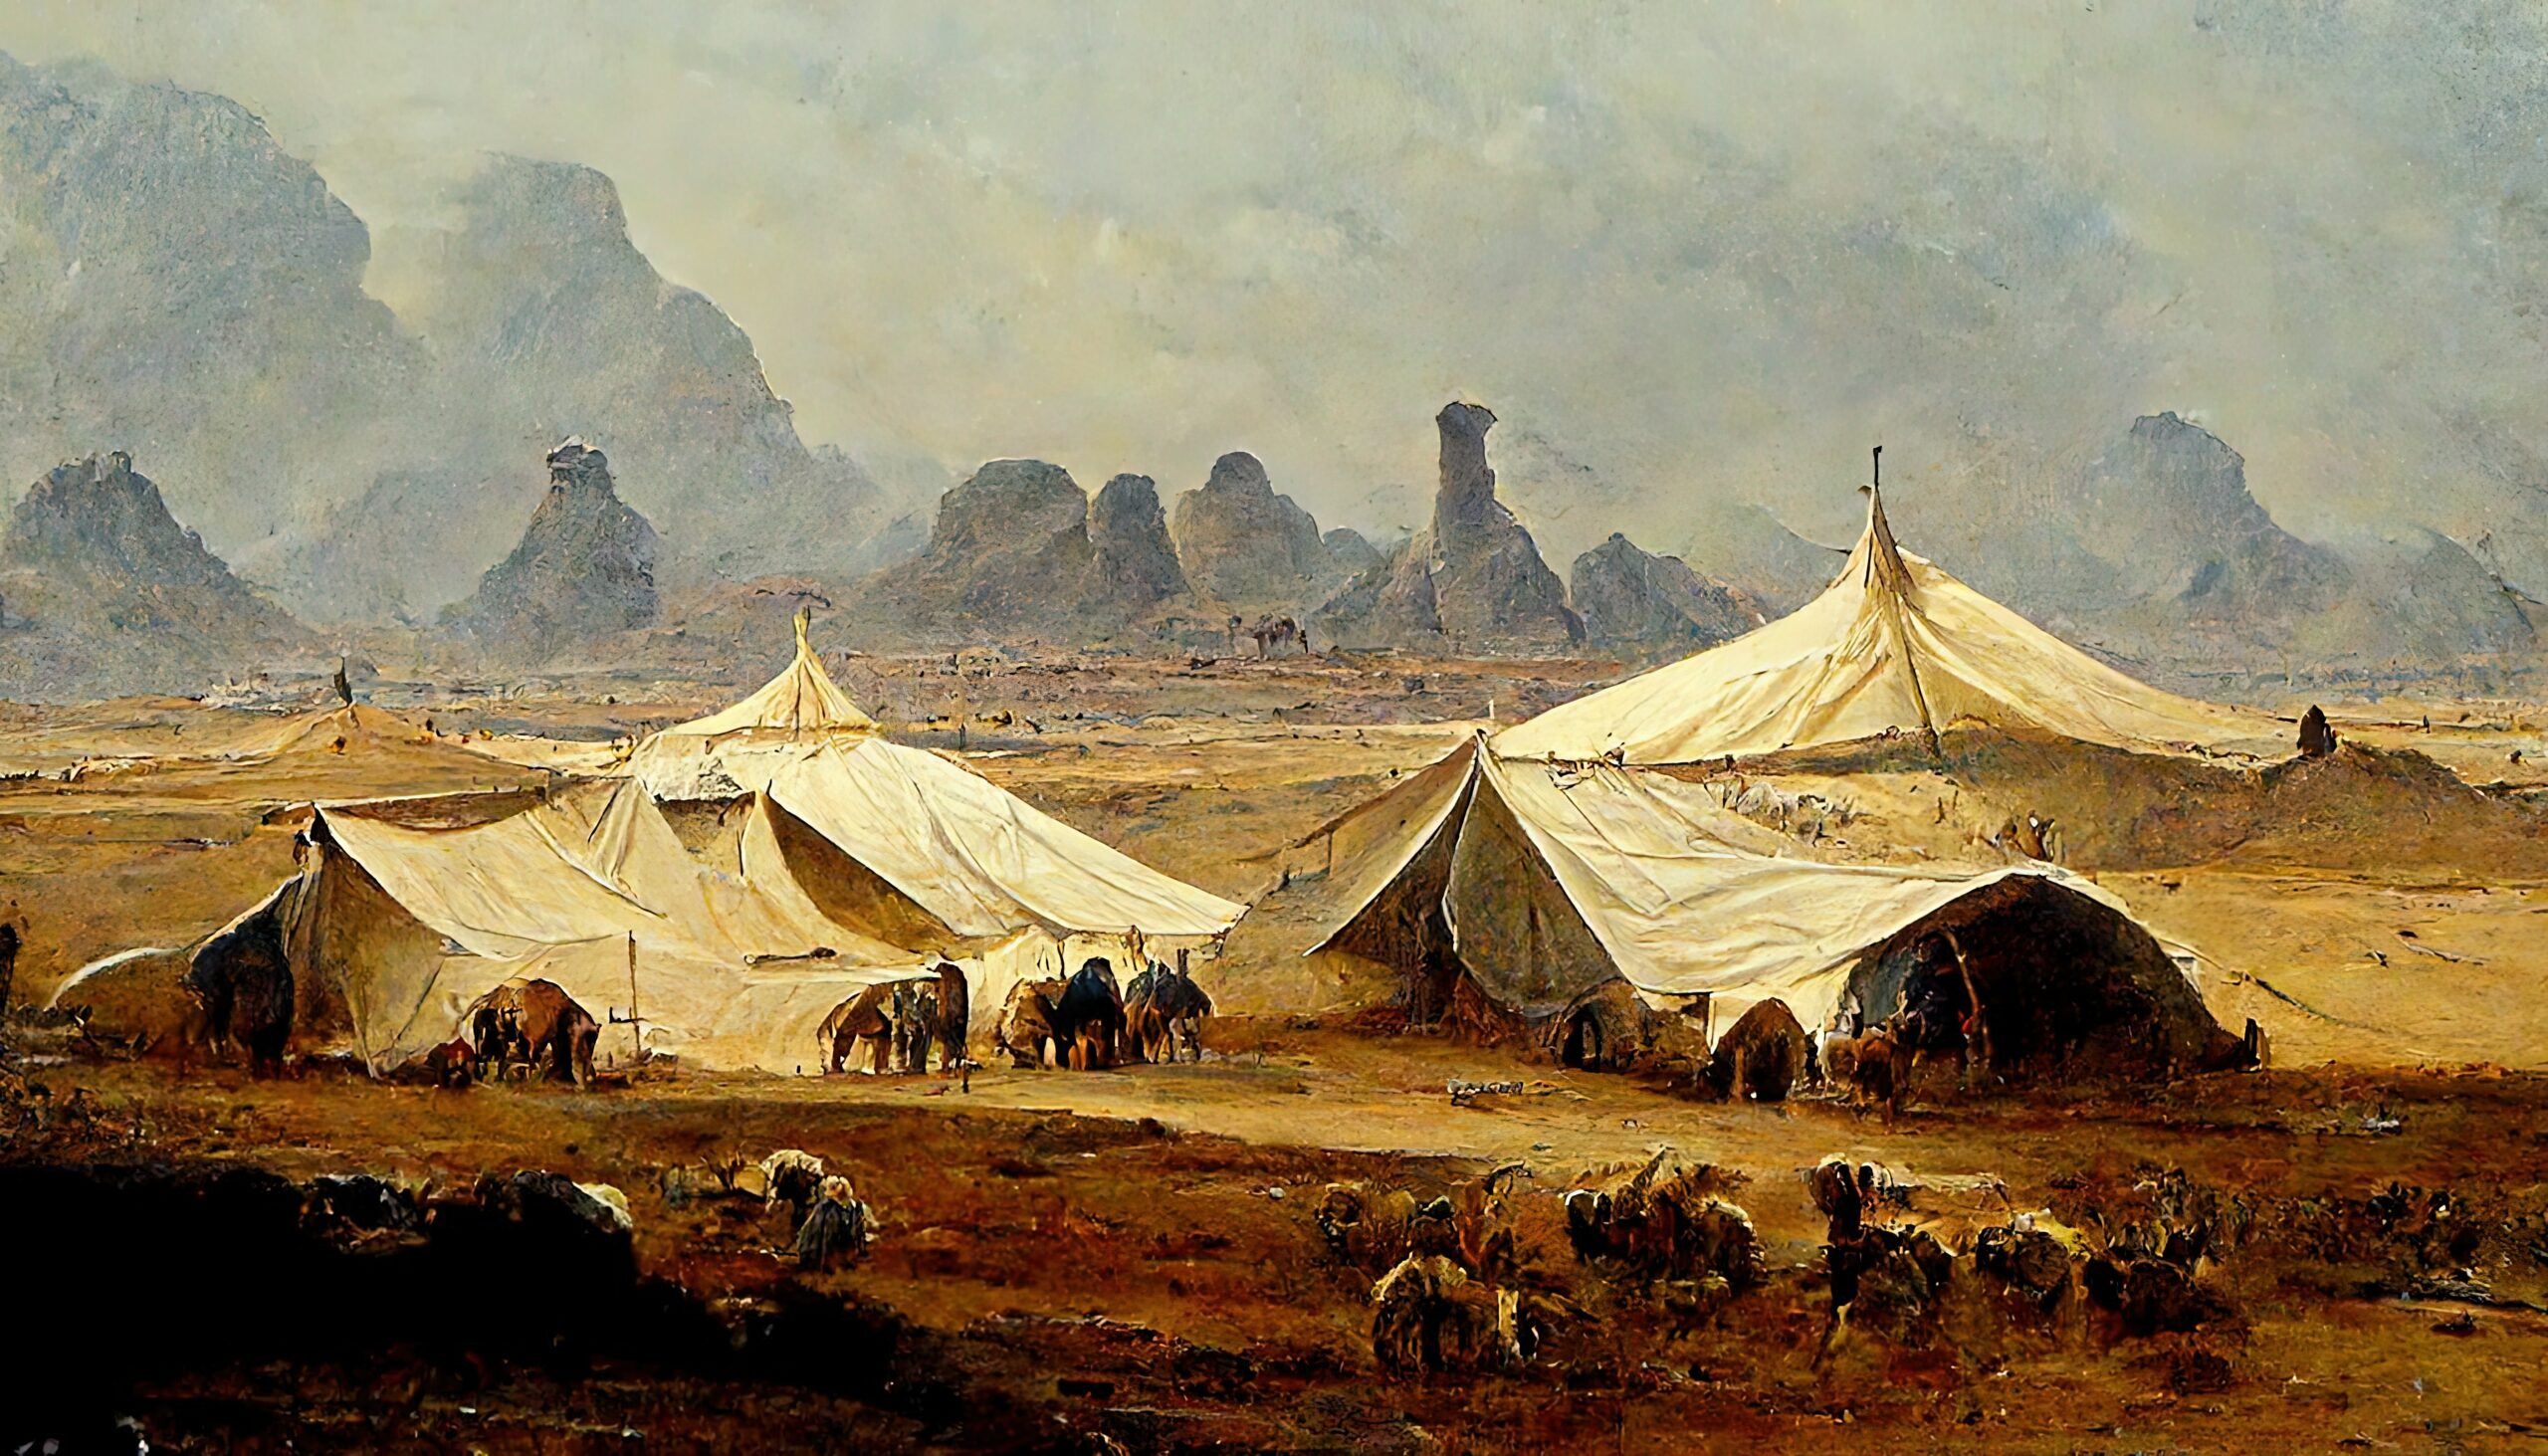 Bedou in tents